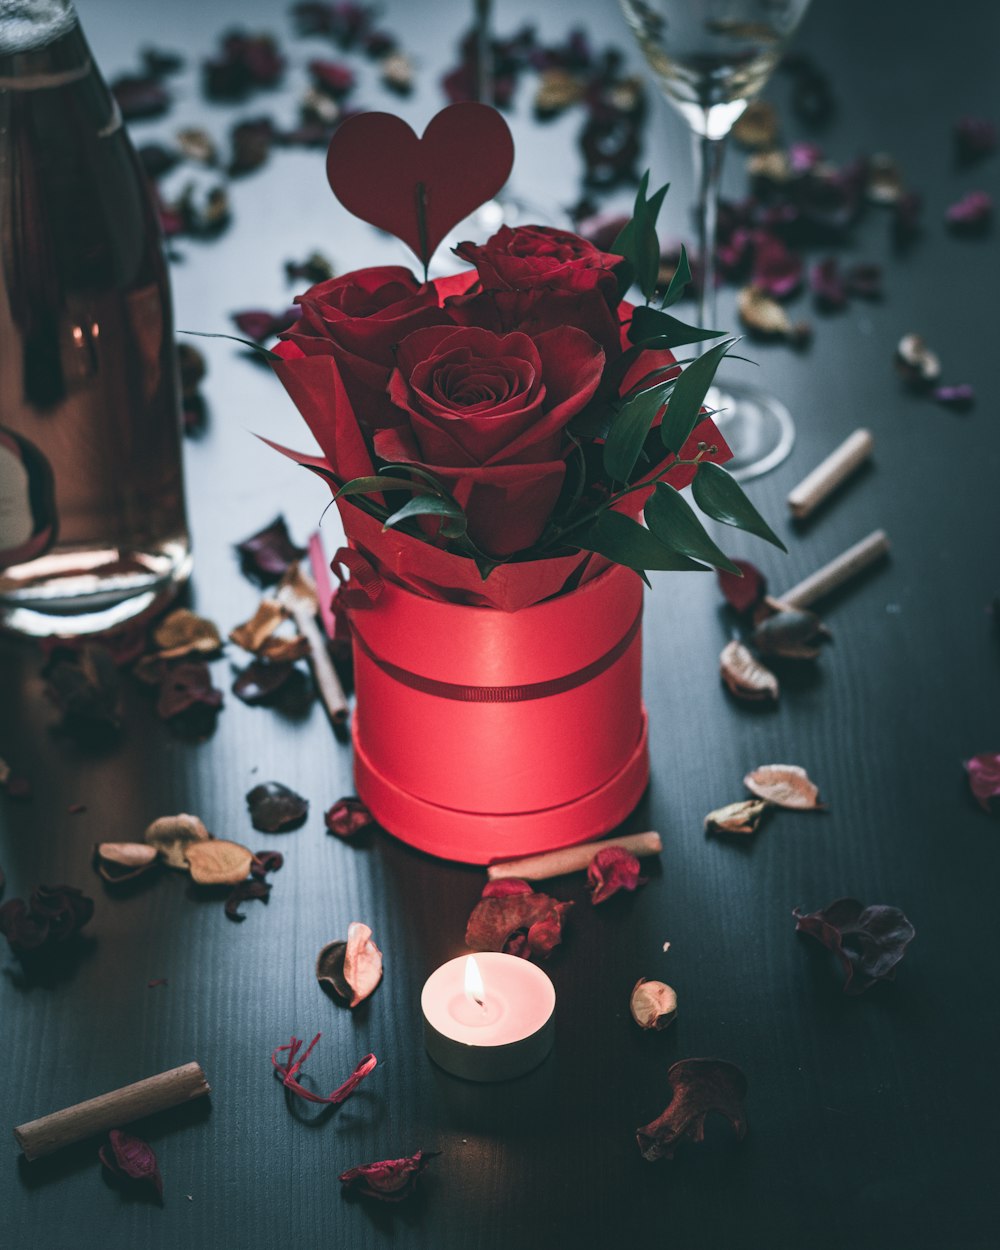 Rose rouge dans un vase en céramique rouge